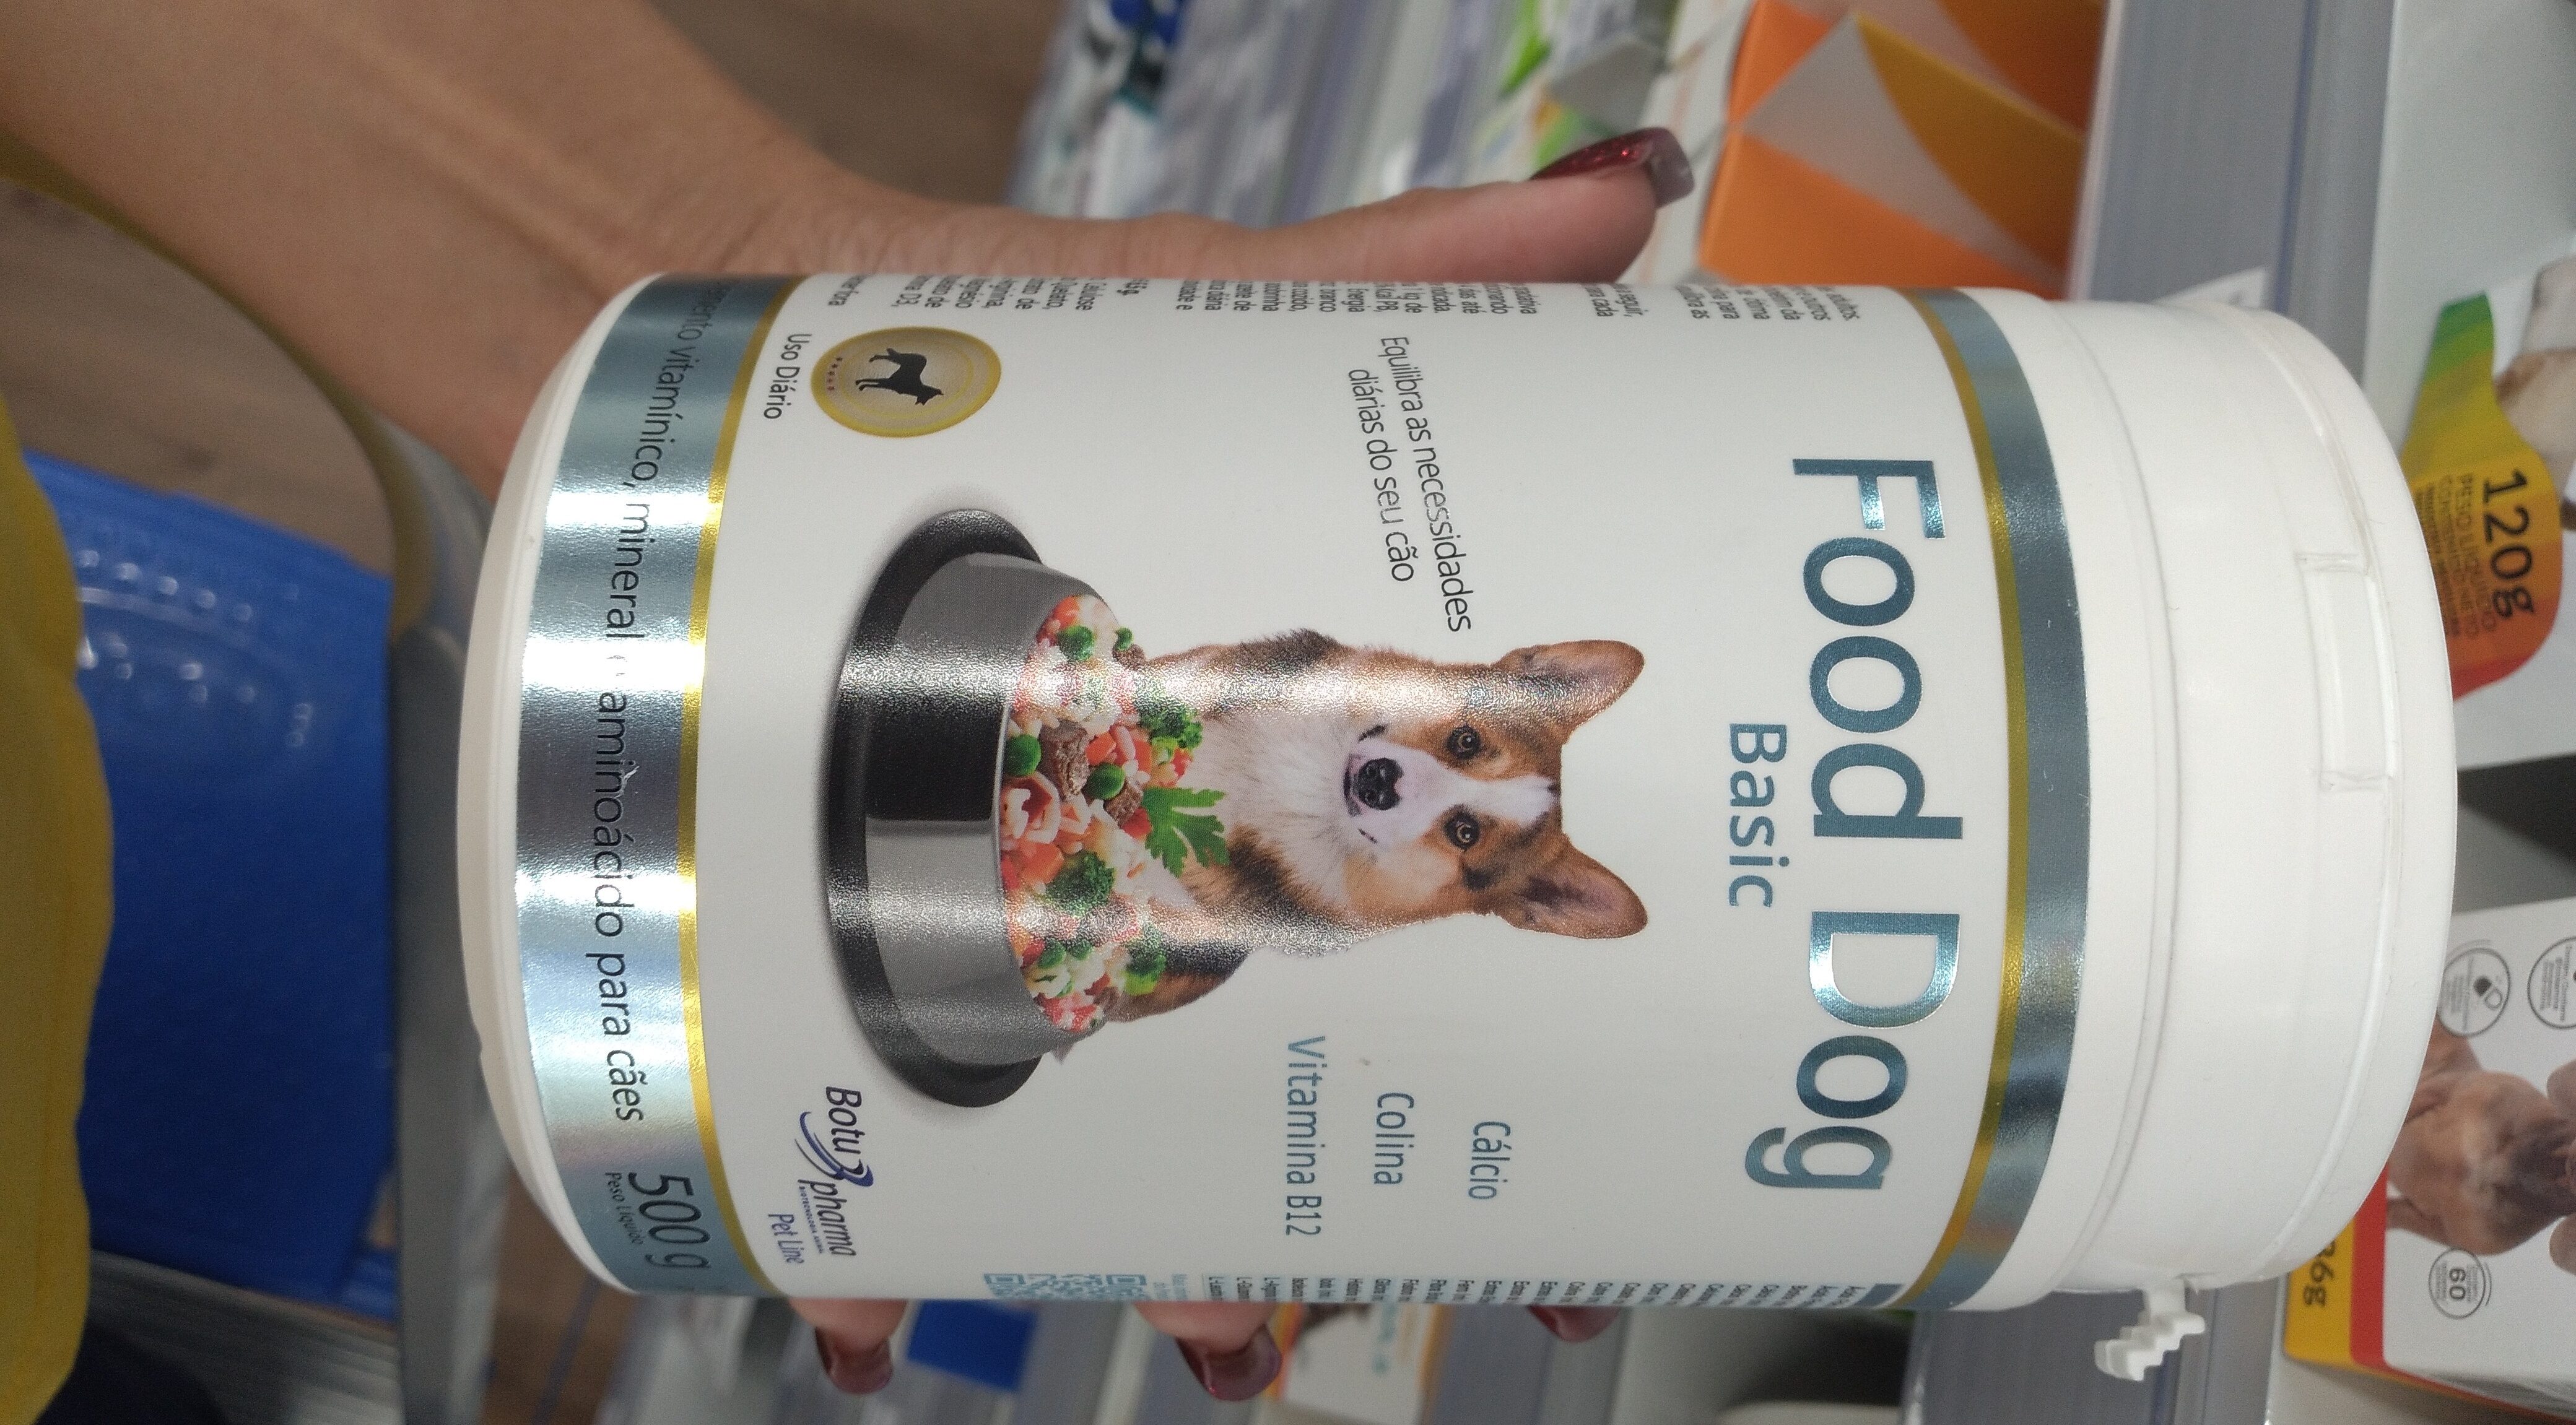 Food dog badic 500g - Product - pt